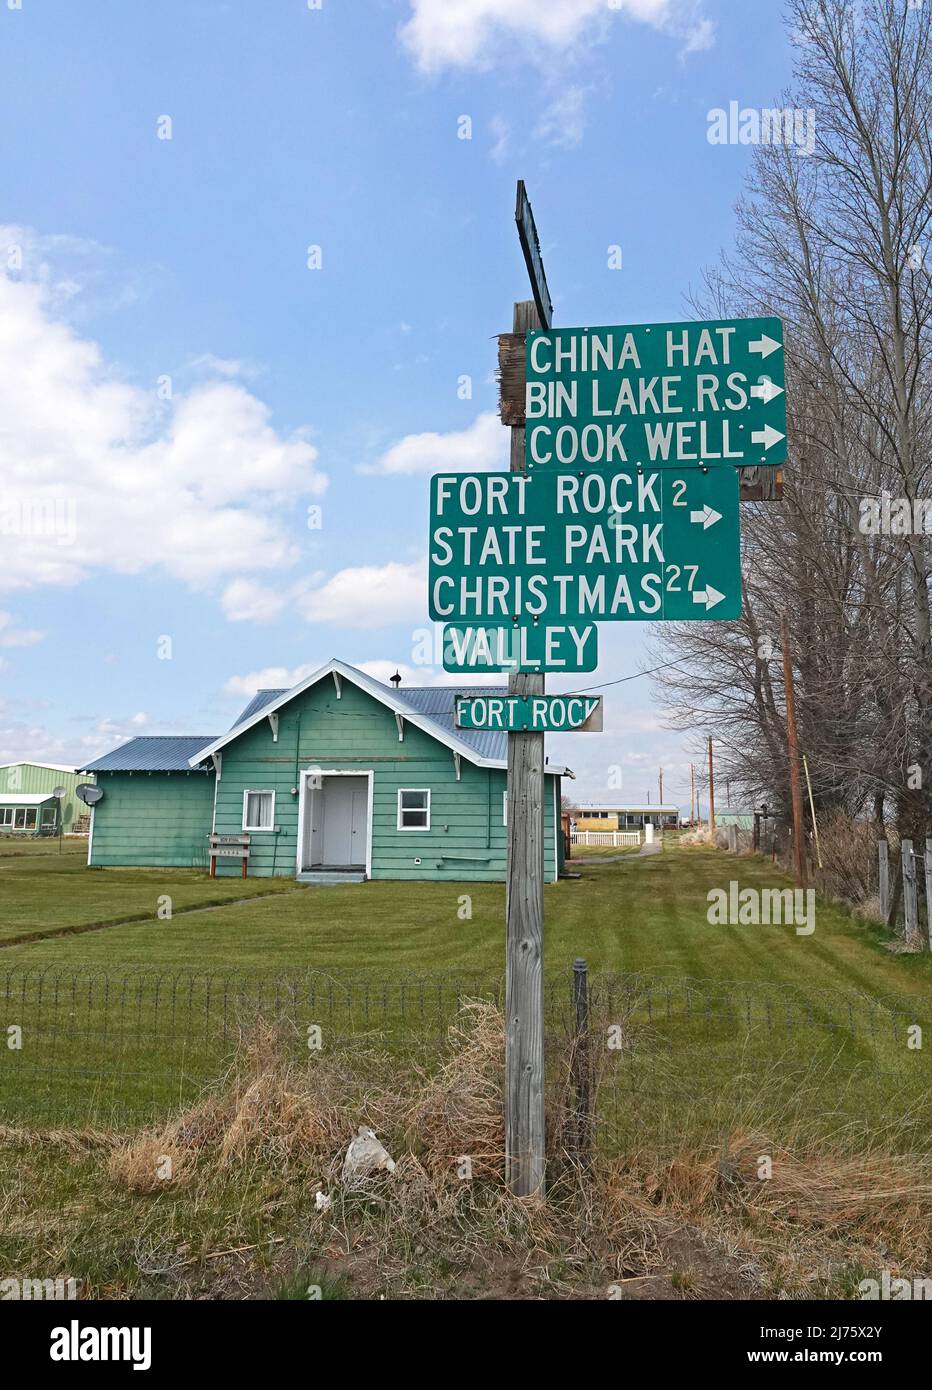 Ein Straßenschild in dem kleinen Dorf Fort Rock, Oregon, weist auf verschiedene lokale Sehenswürdigkeiten hin. Stockfoto